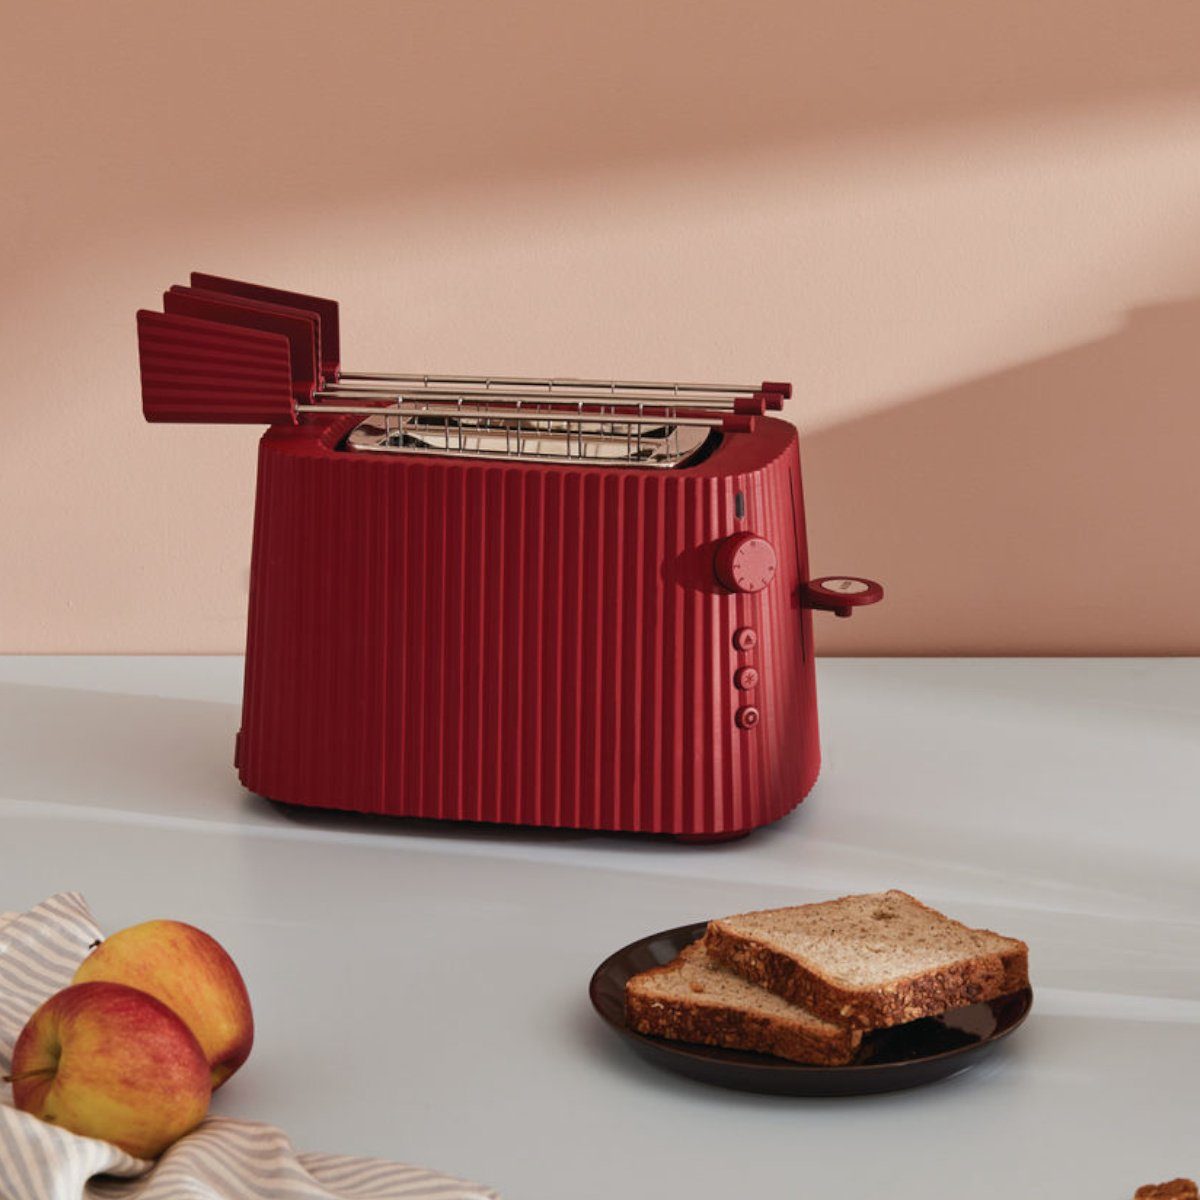 Stecker, Alessi Toaster 850 Leistung Farbwahl, - Rot Elektrische Plissé Watt Toaster Europäischer